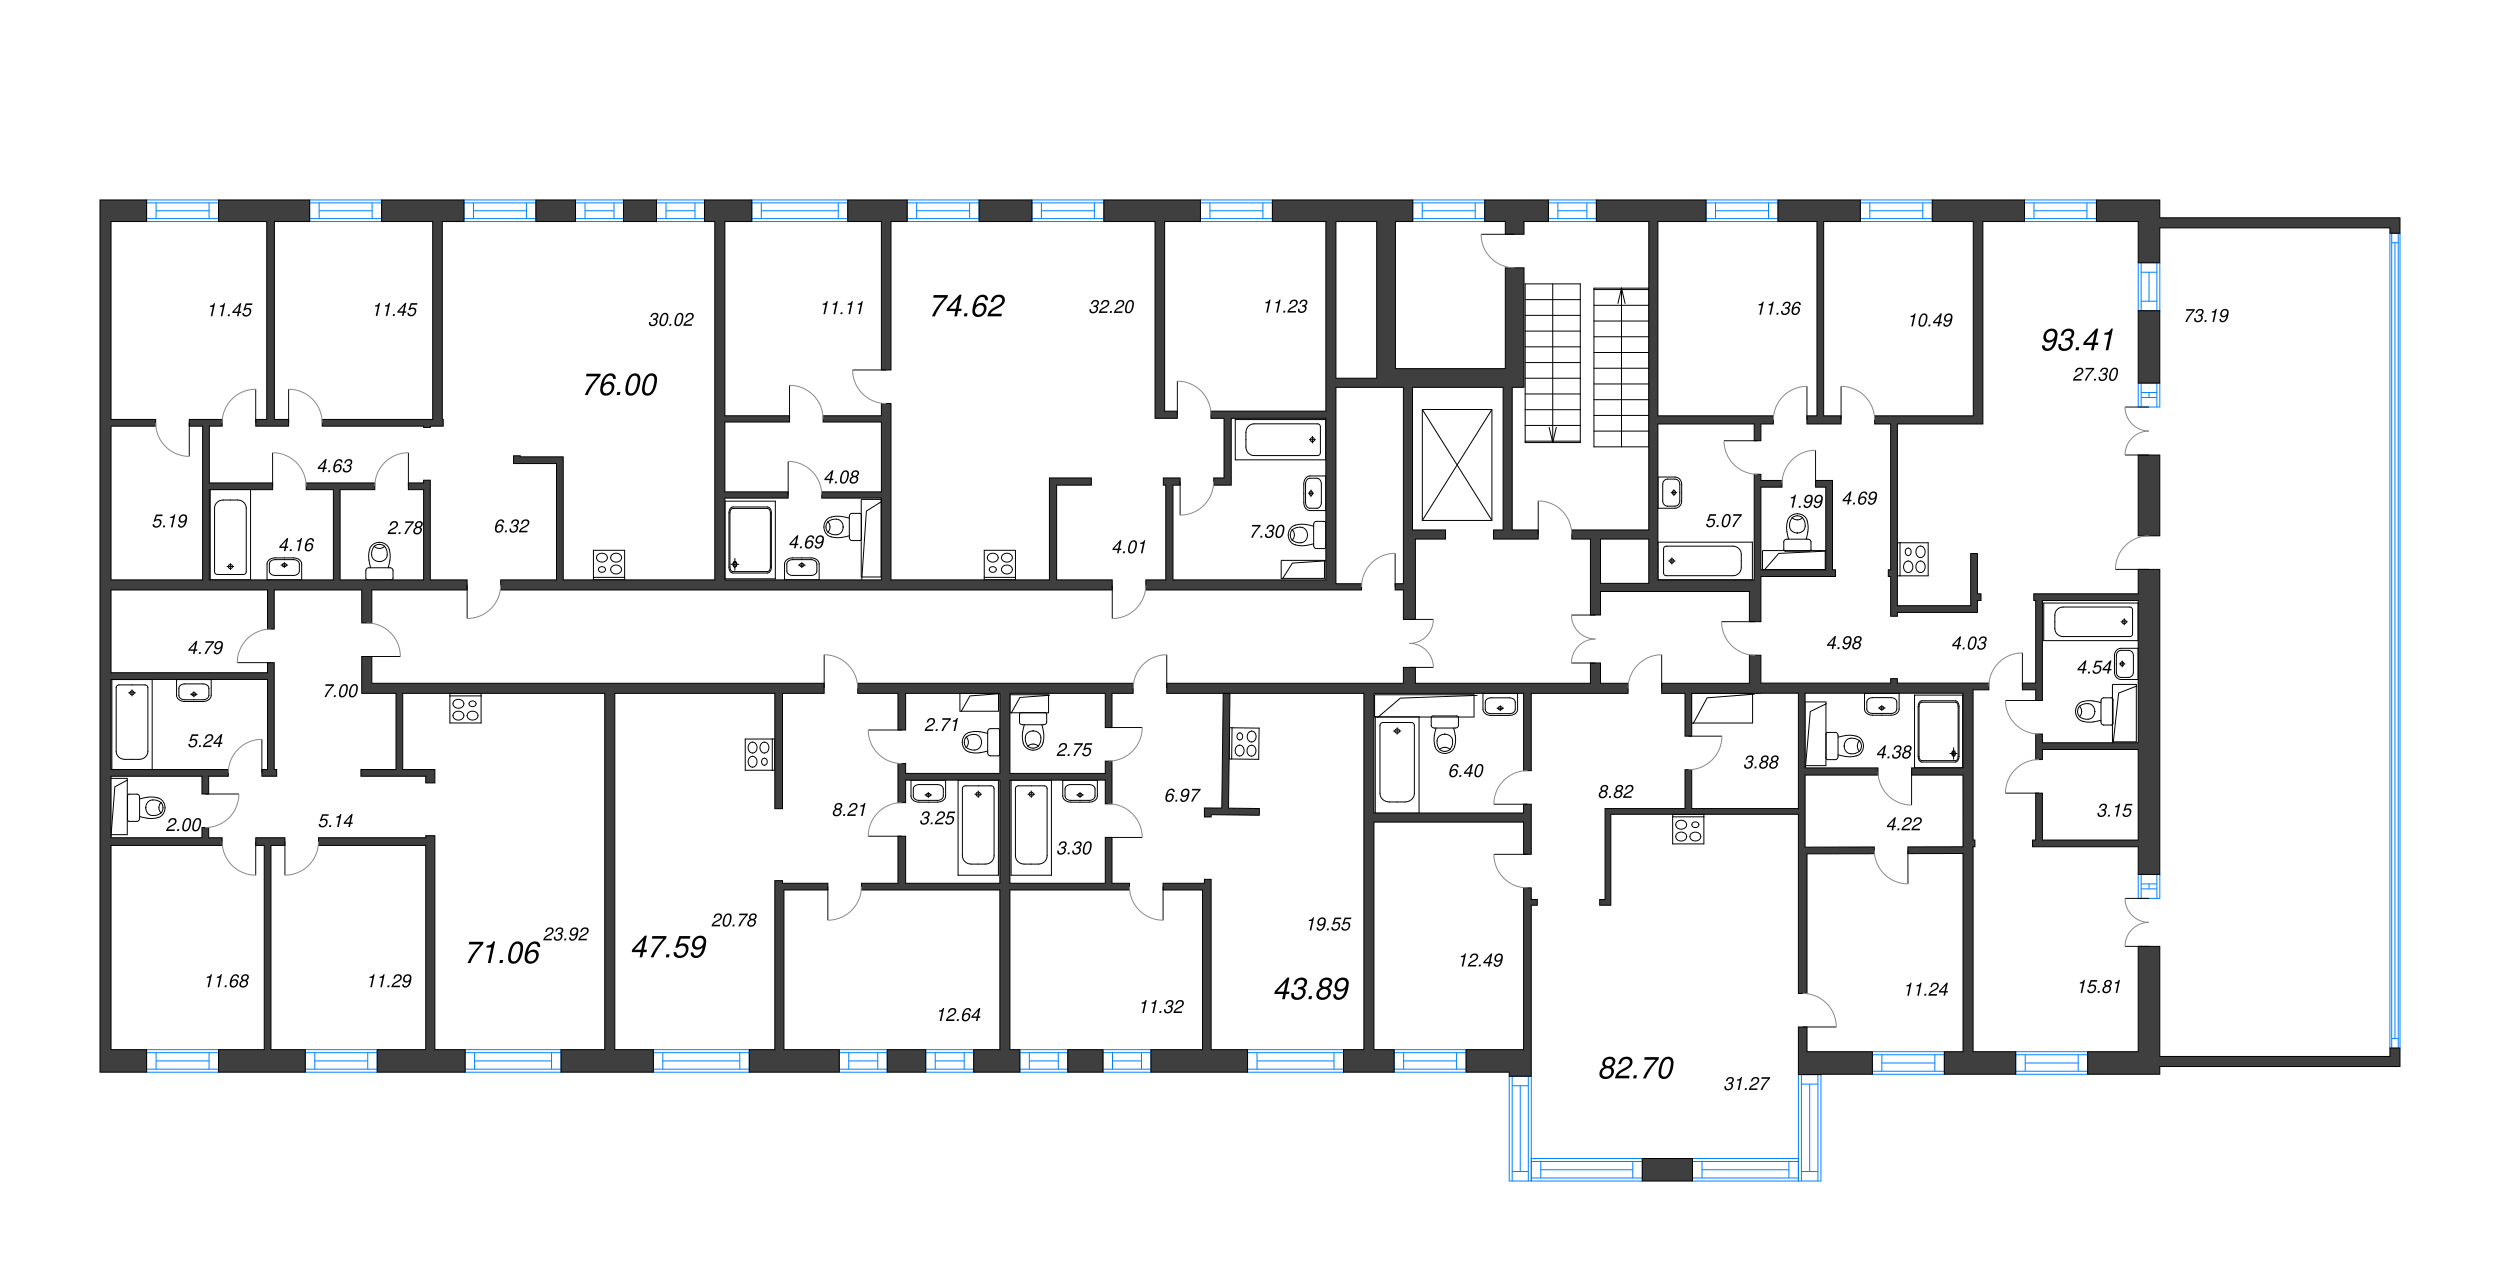 3-комнатная (Евро) квартира, 71.06 м² в ЖК "Черная речка, 41" - планировка этажа